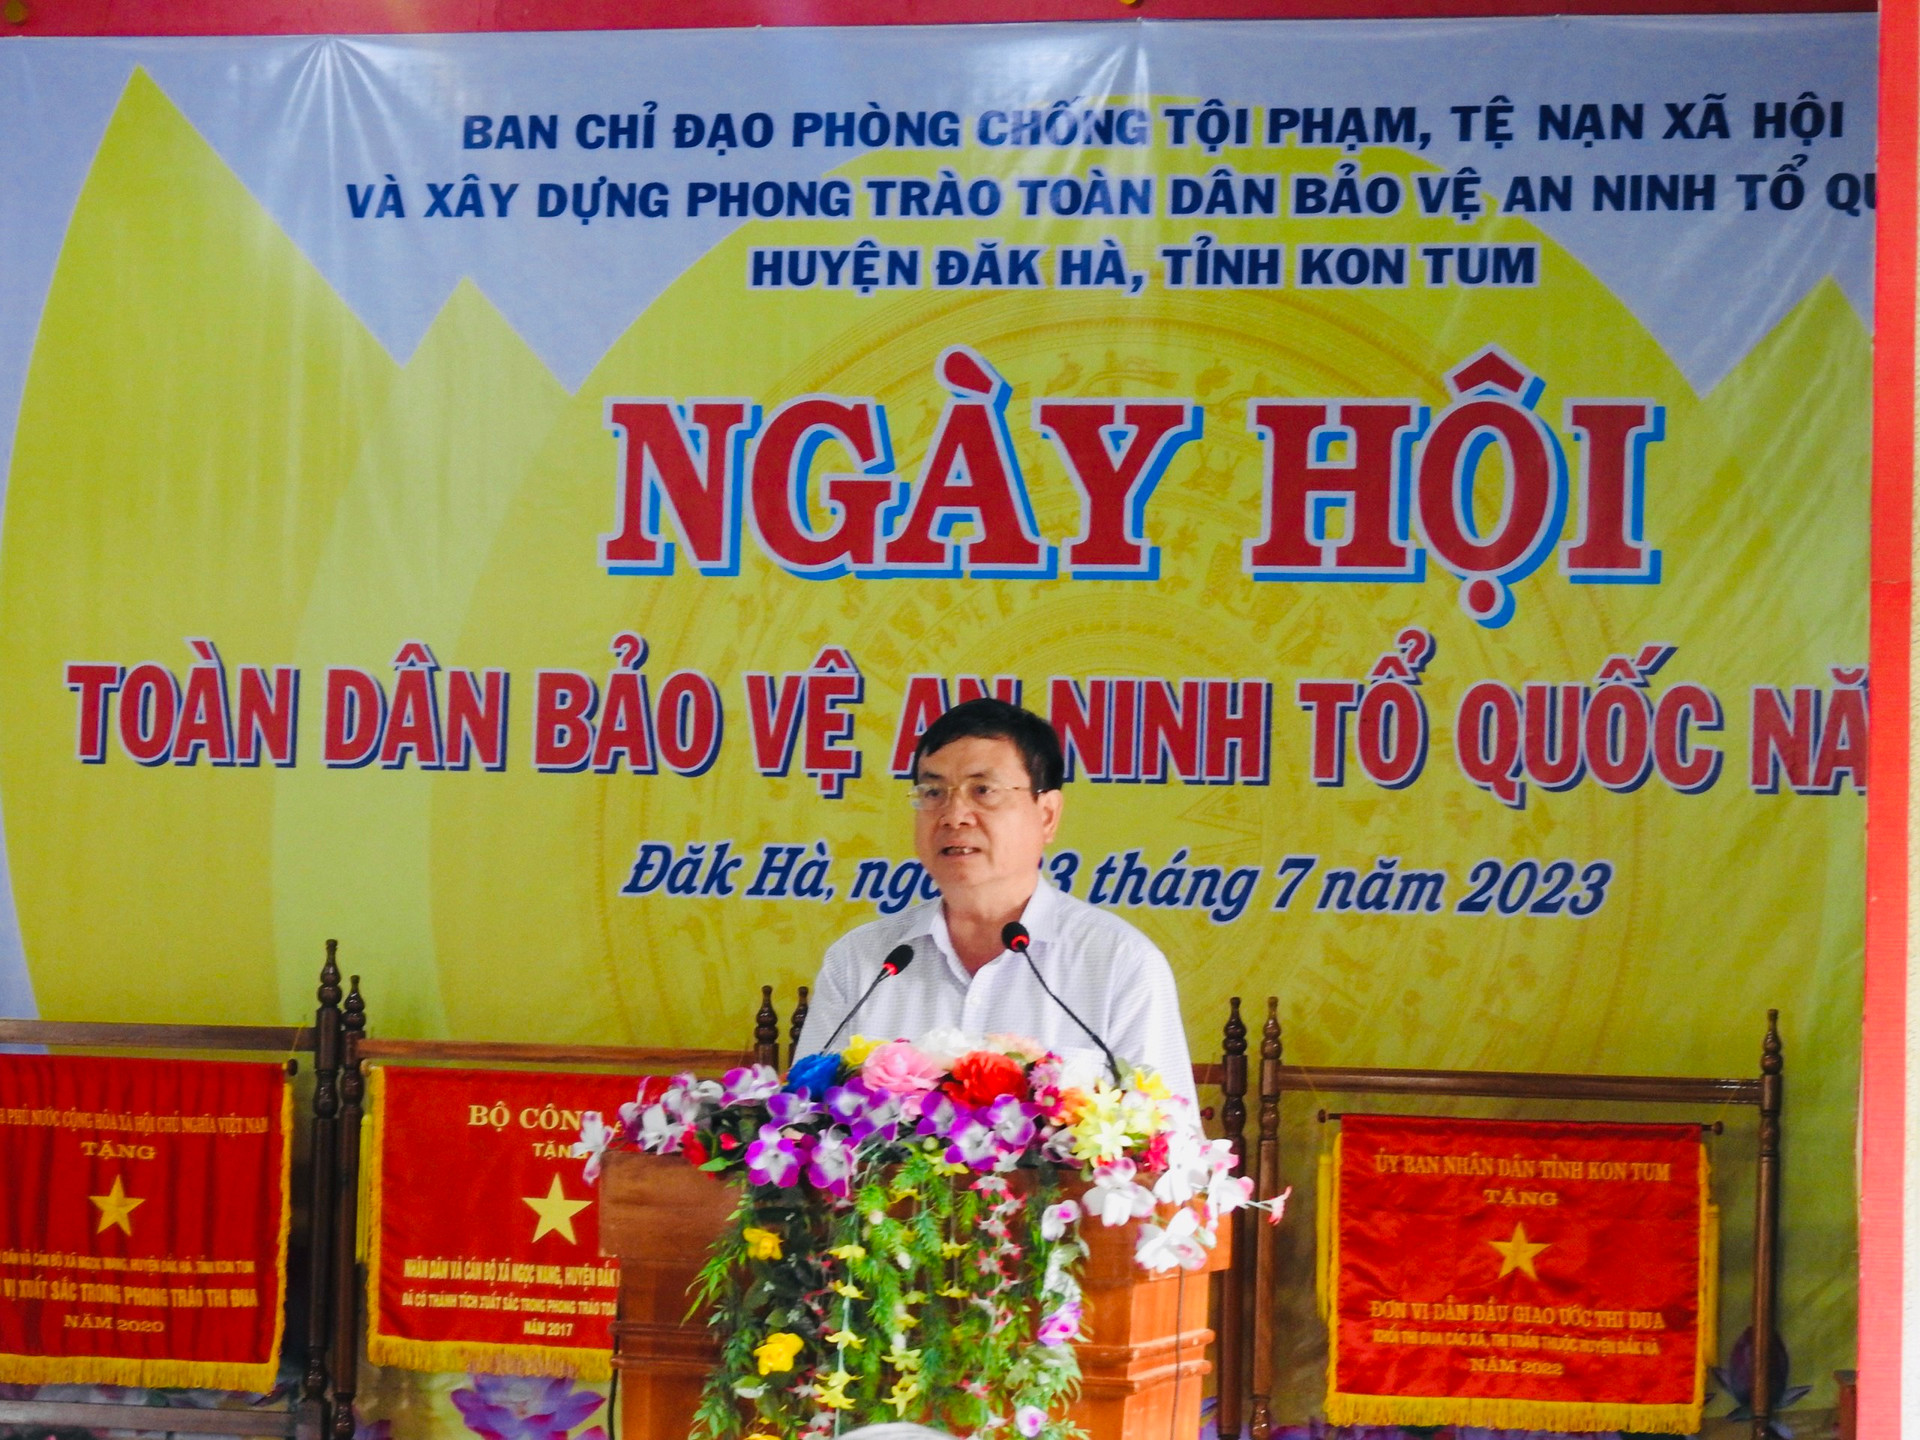 Ảnh này là ông Nguyễn Hữu Tháp, Phó Chủ tịch UBND tỉnh Kon Tum